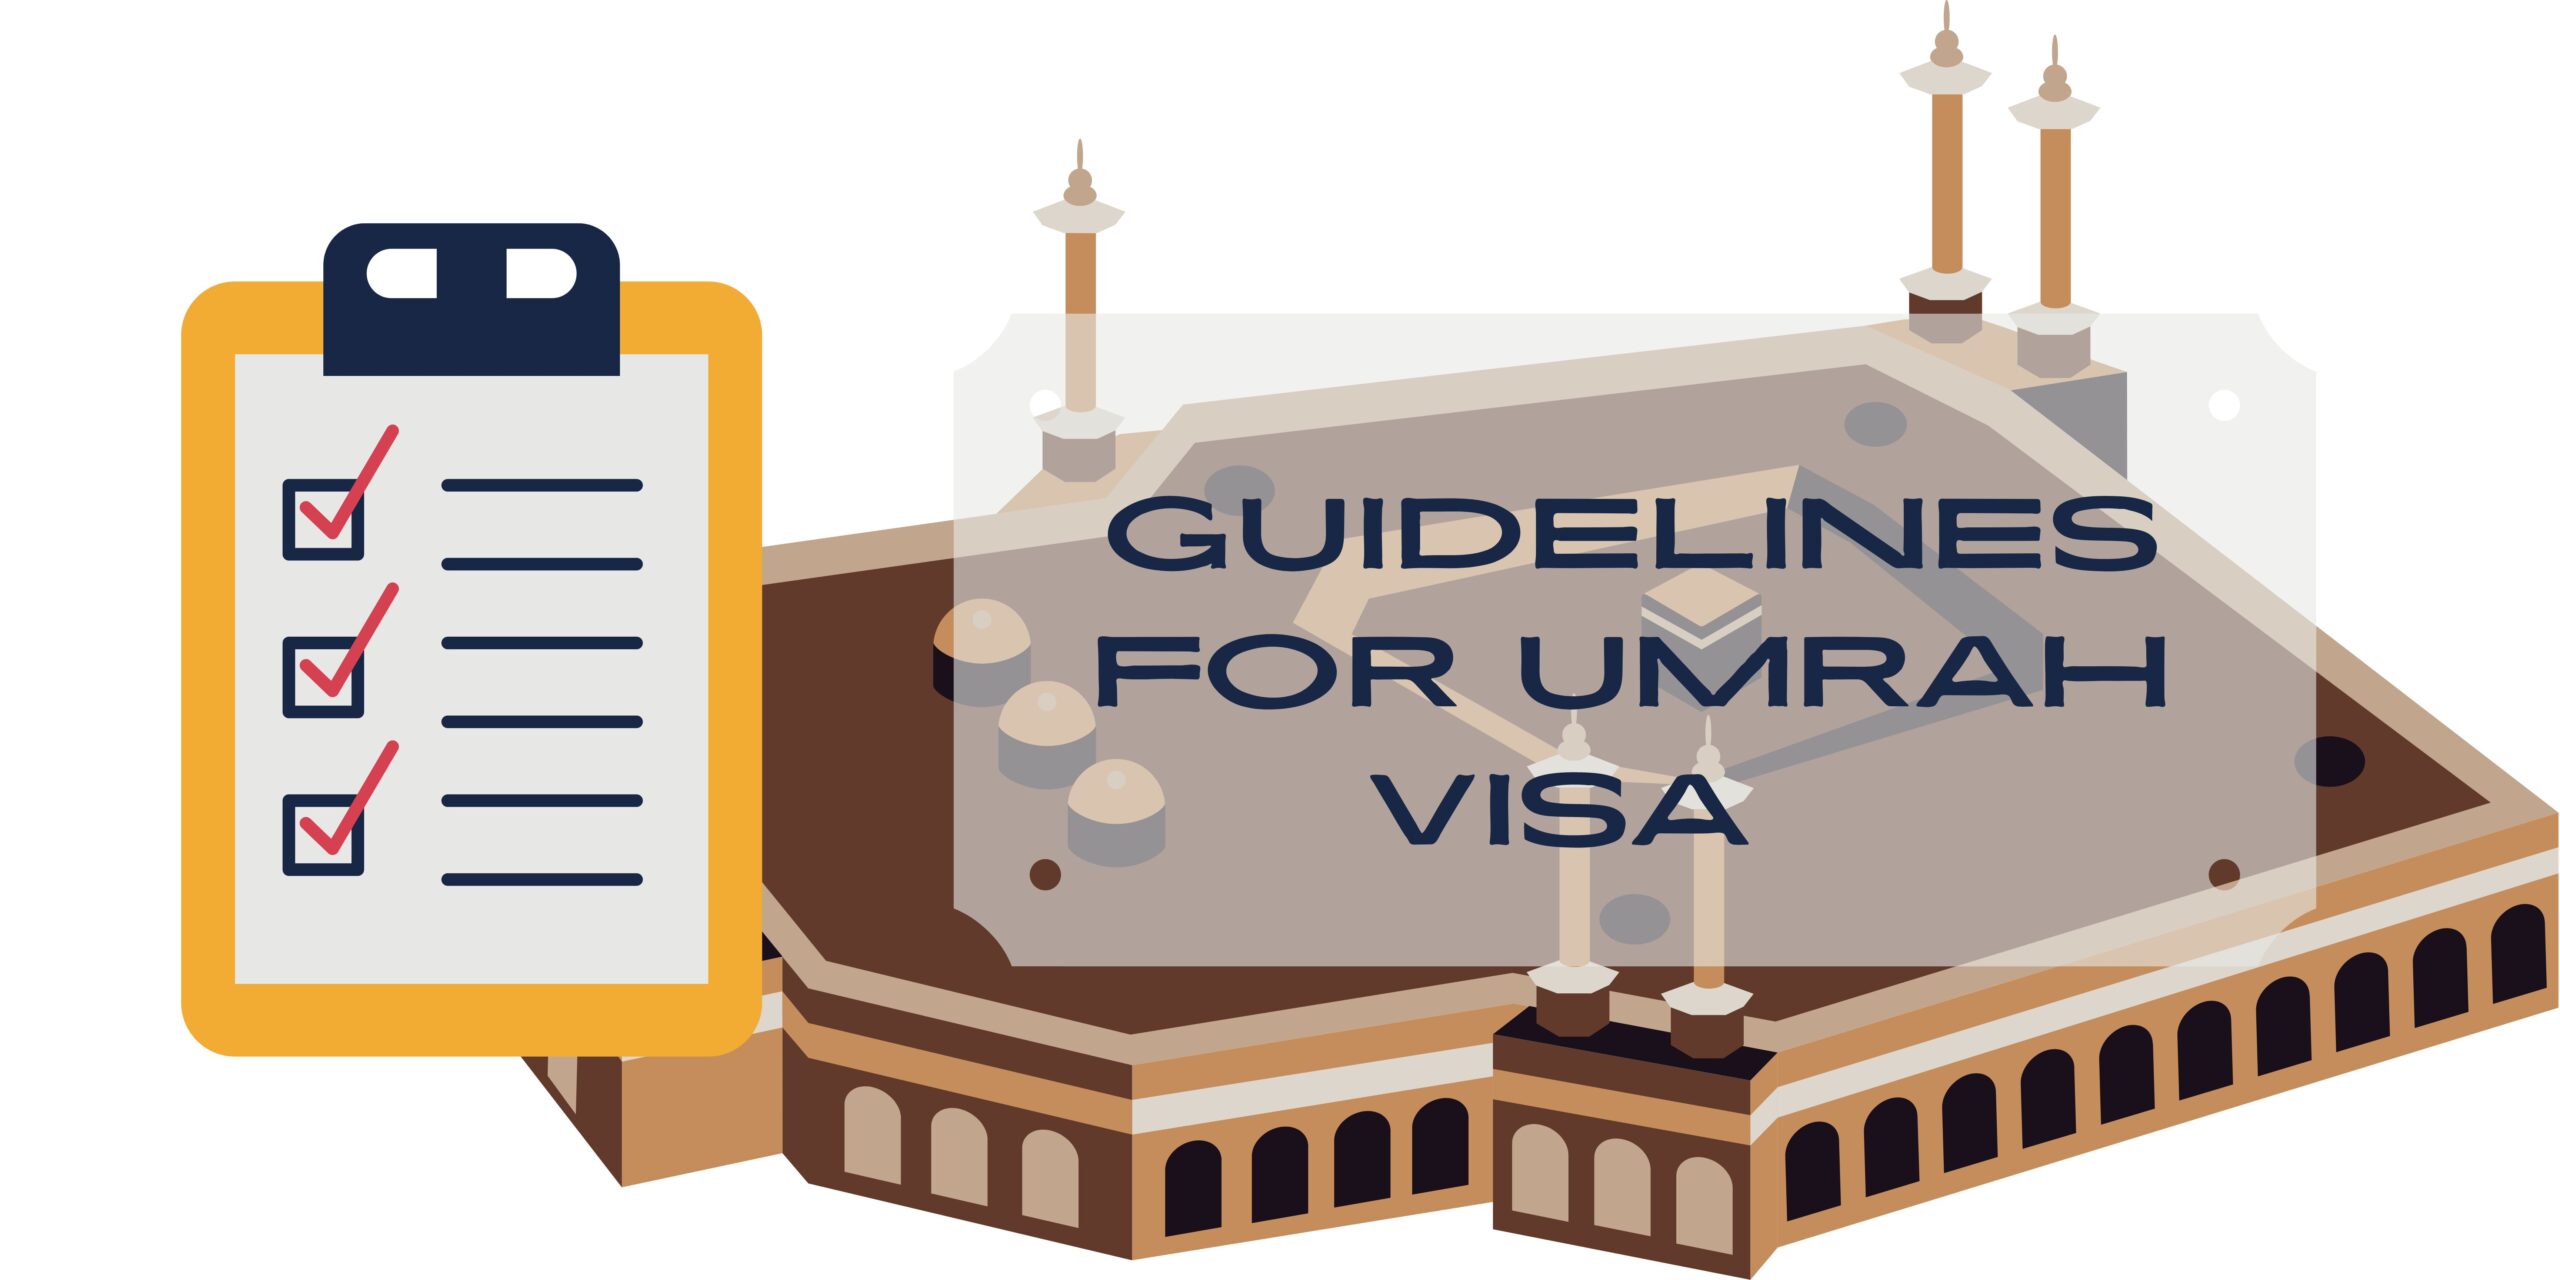 GUIDELINES FOR UMRAH VISA